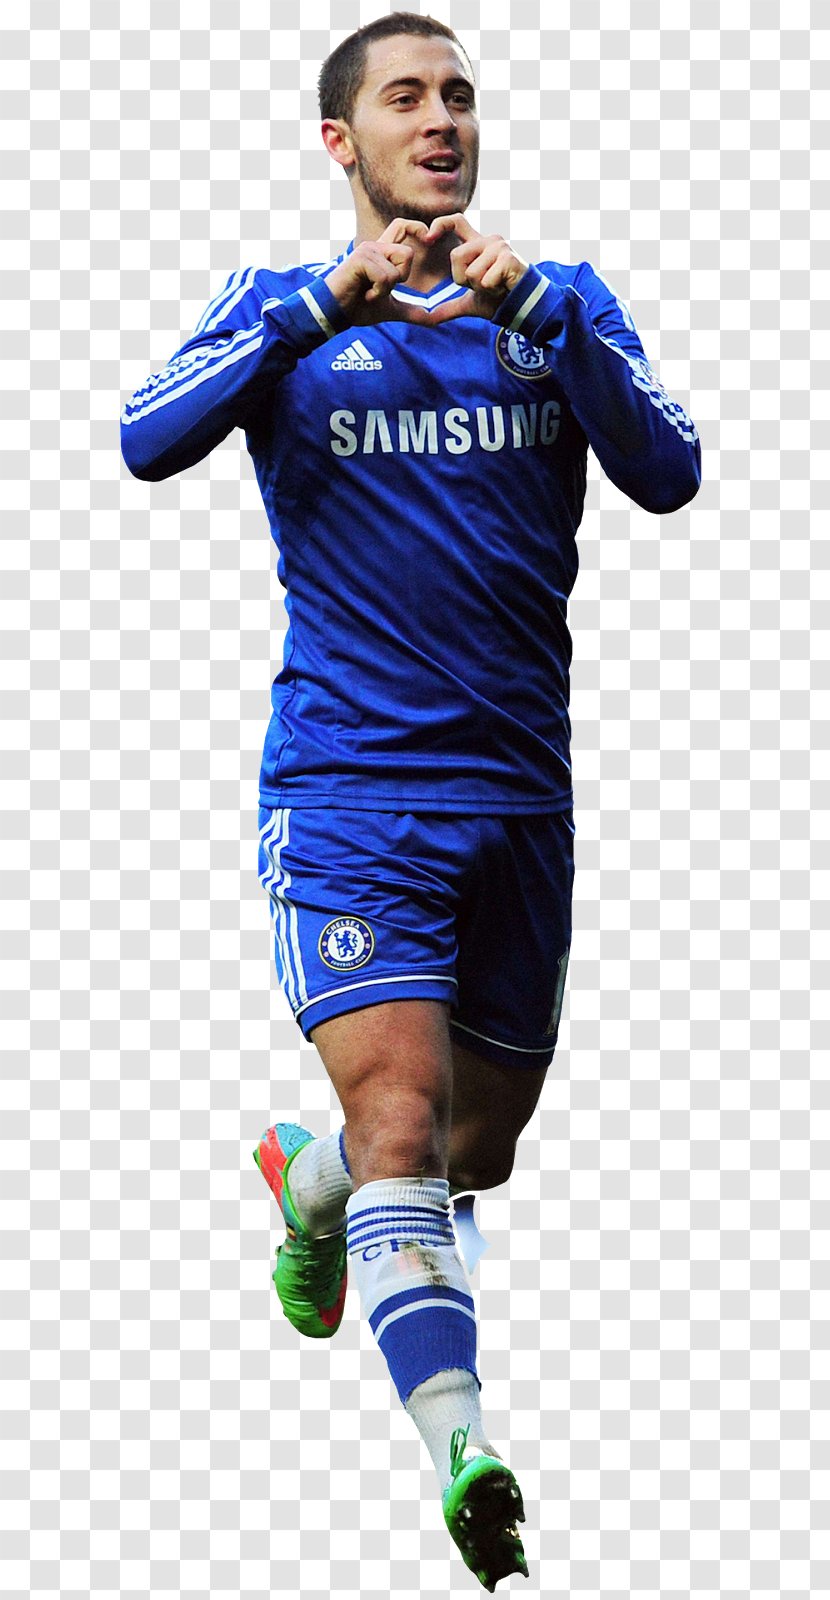 Eden Hazard Chelsea F.C. Premier League Football Player - Uniform Transparent PNG